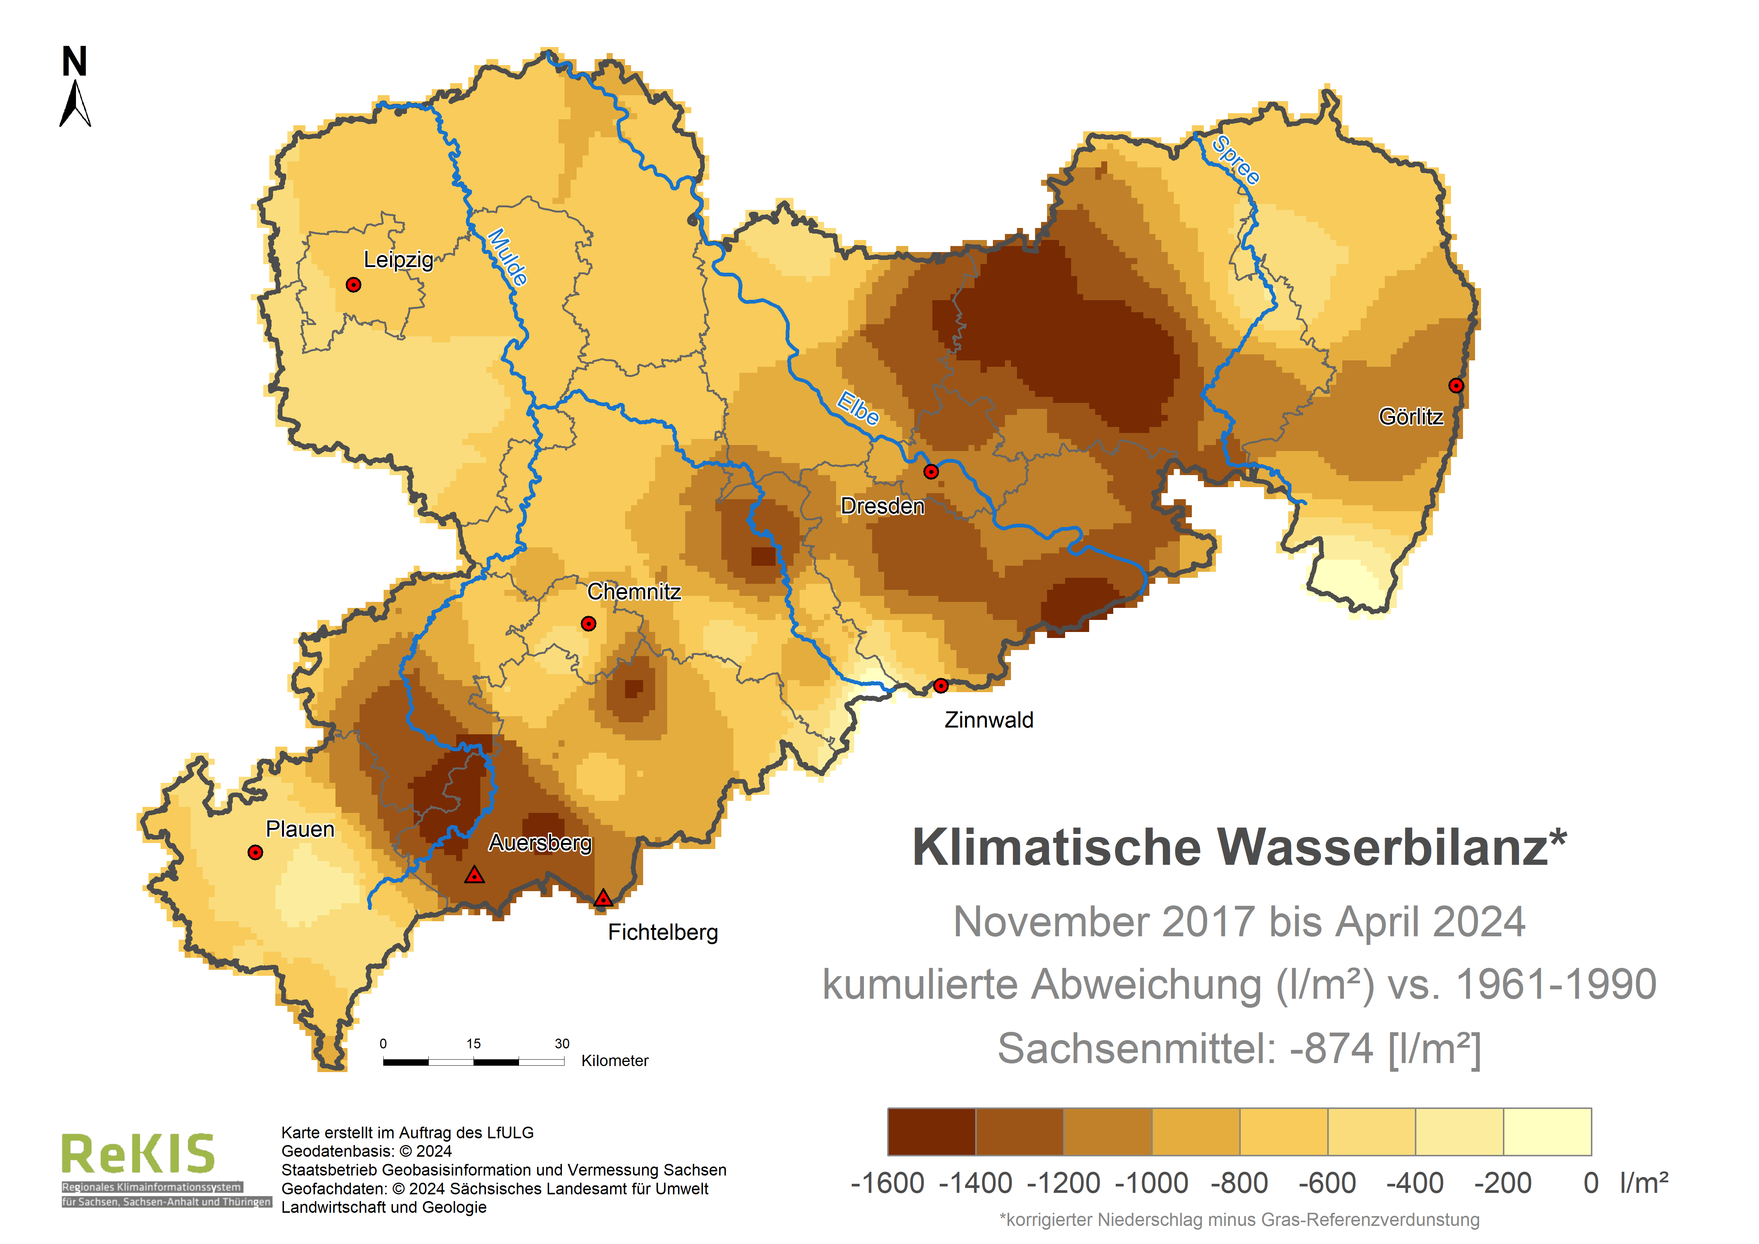 Karte Sachsen mit Darstellung der Klimatischen Wasserbilanz im Vergleich zum Referenzzeitraum 1961 bis 1990